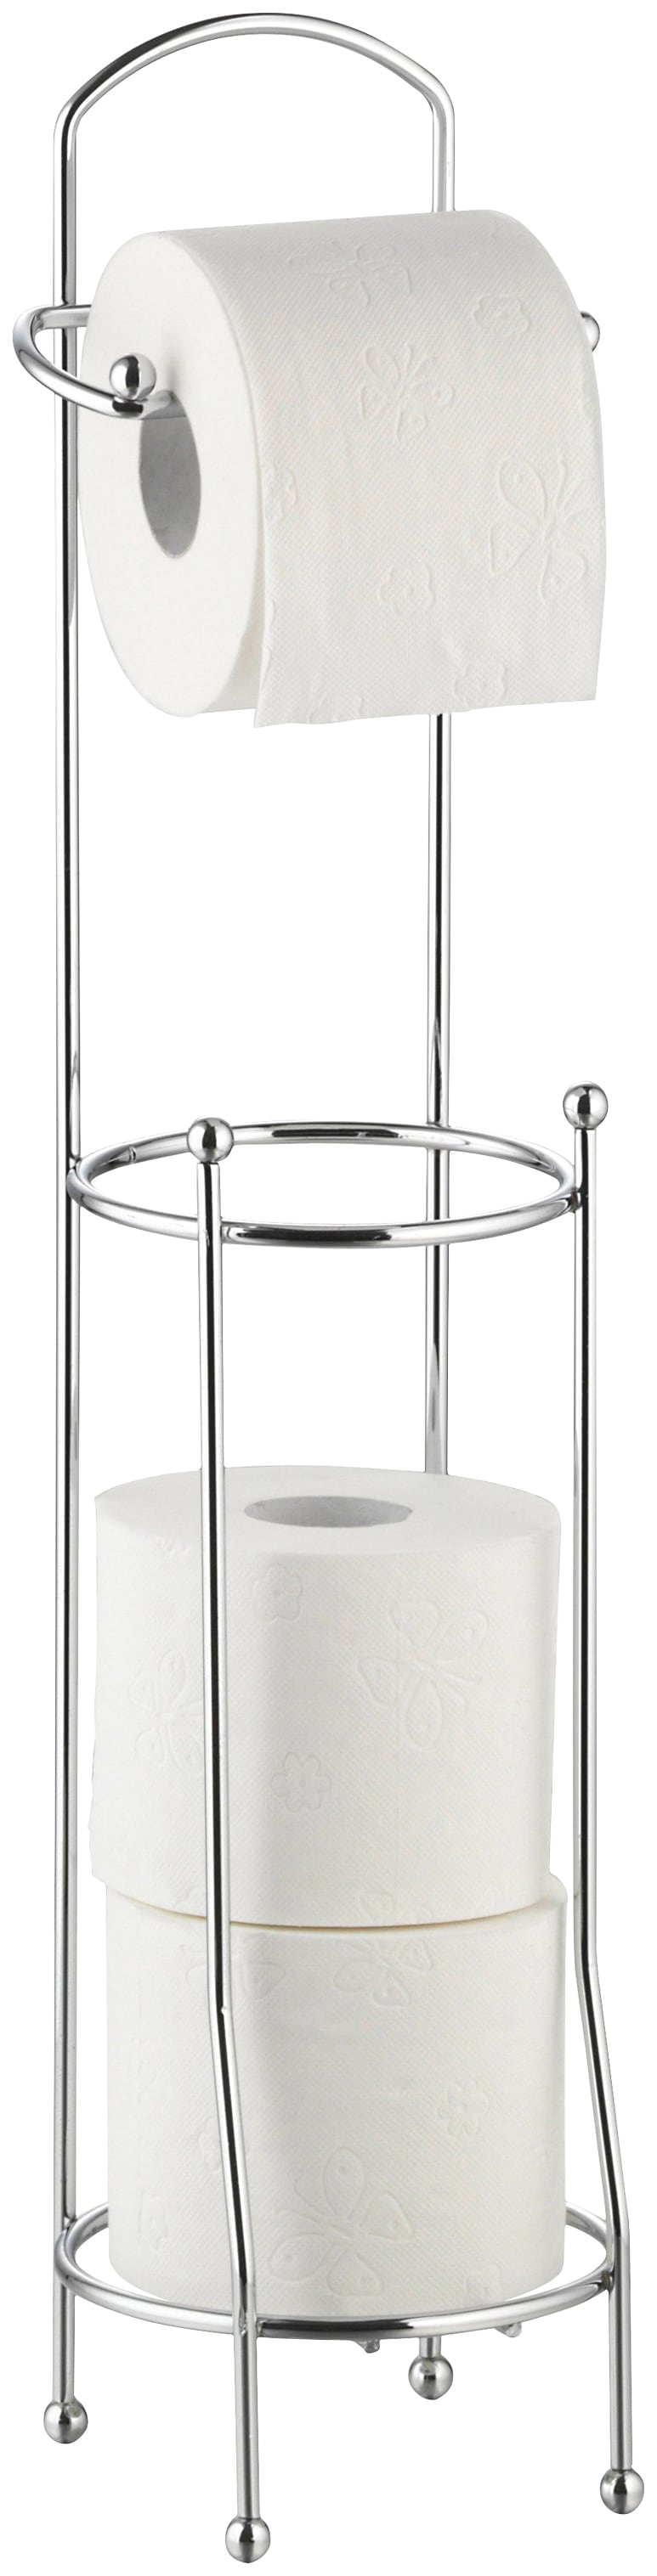 Toilettenpapierhalter »Udana«, für ca. 4 Rollen, Länge: 15,5 cm